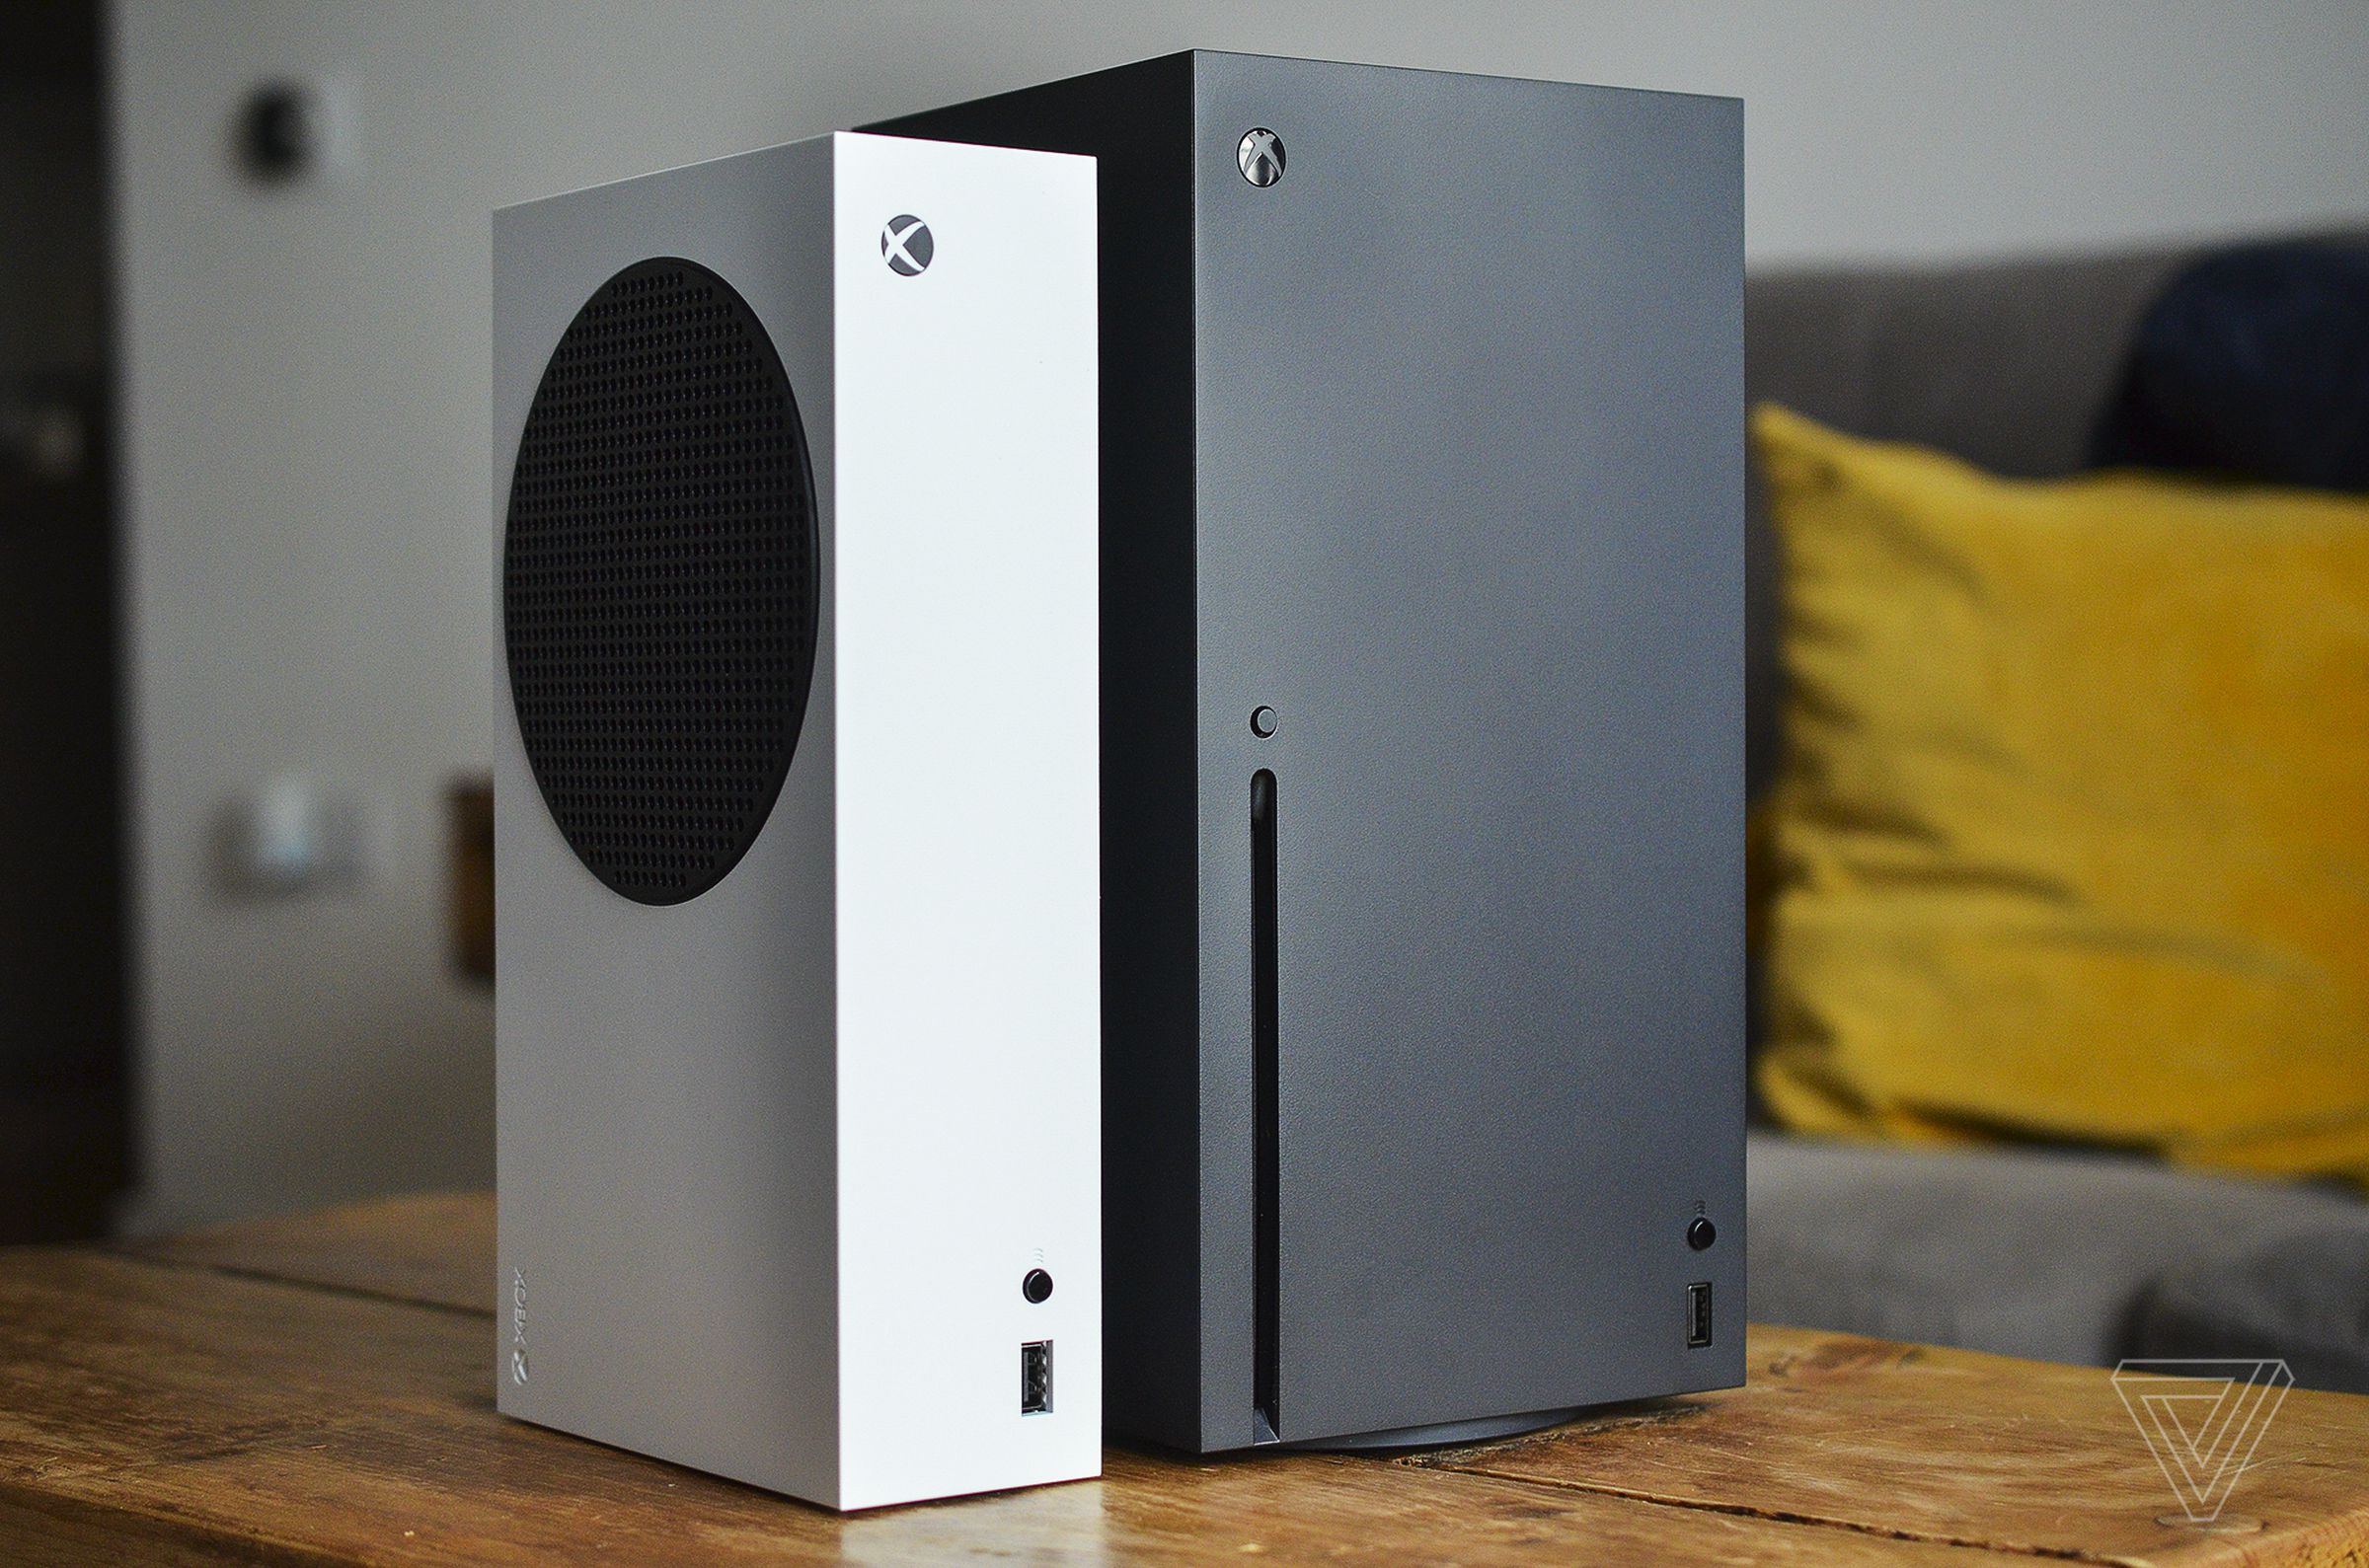 Die weiße Xbox Series S von Microsoft steht neben der größeren, schwarzen Xbox Series X auf einem hölzernen Couchtisch im Wohnzimmer